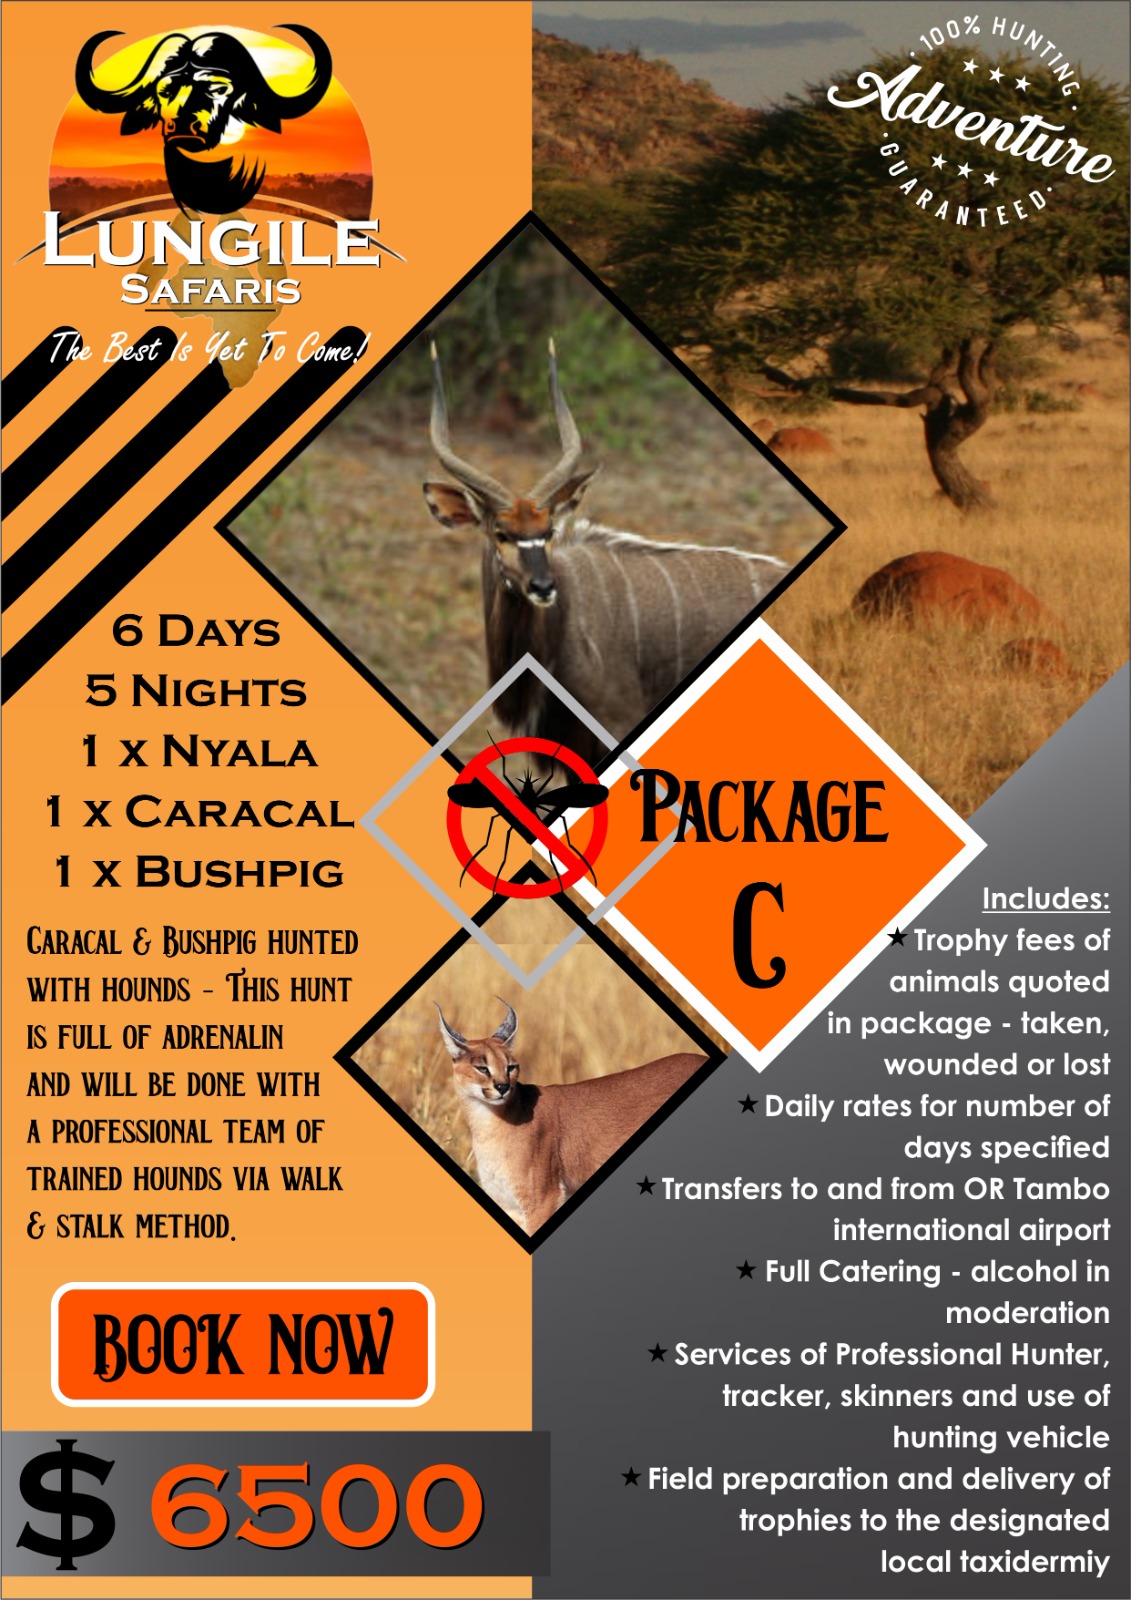 Lungile Safaris Package C